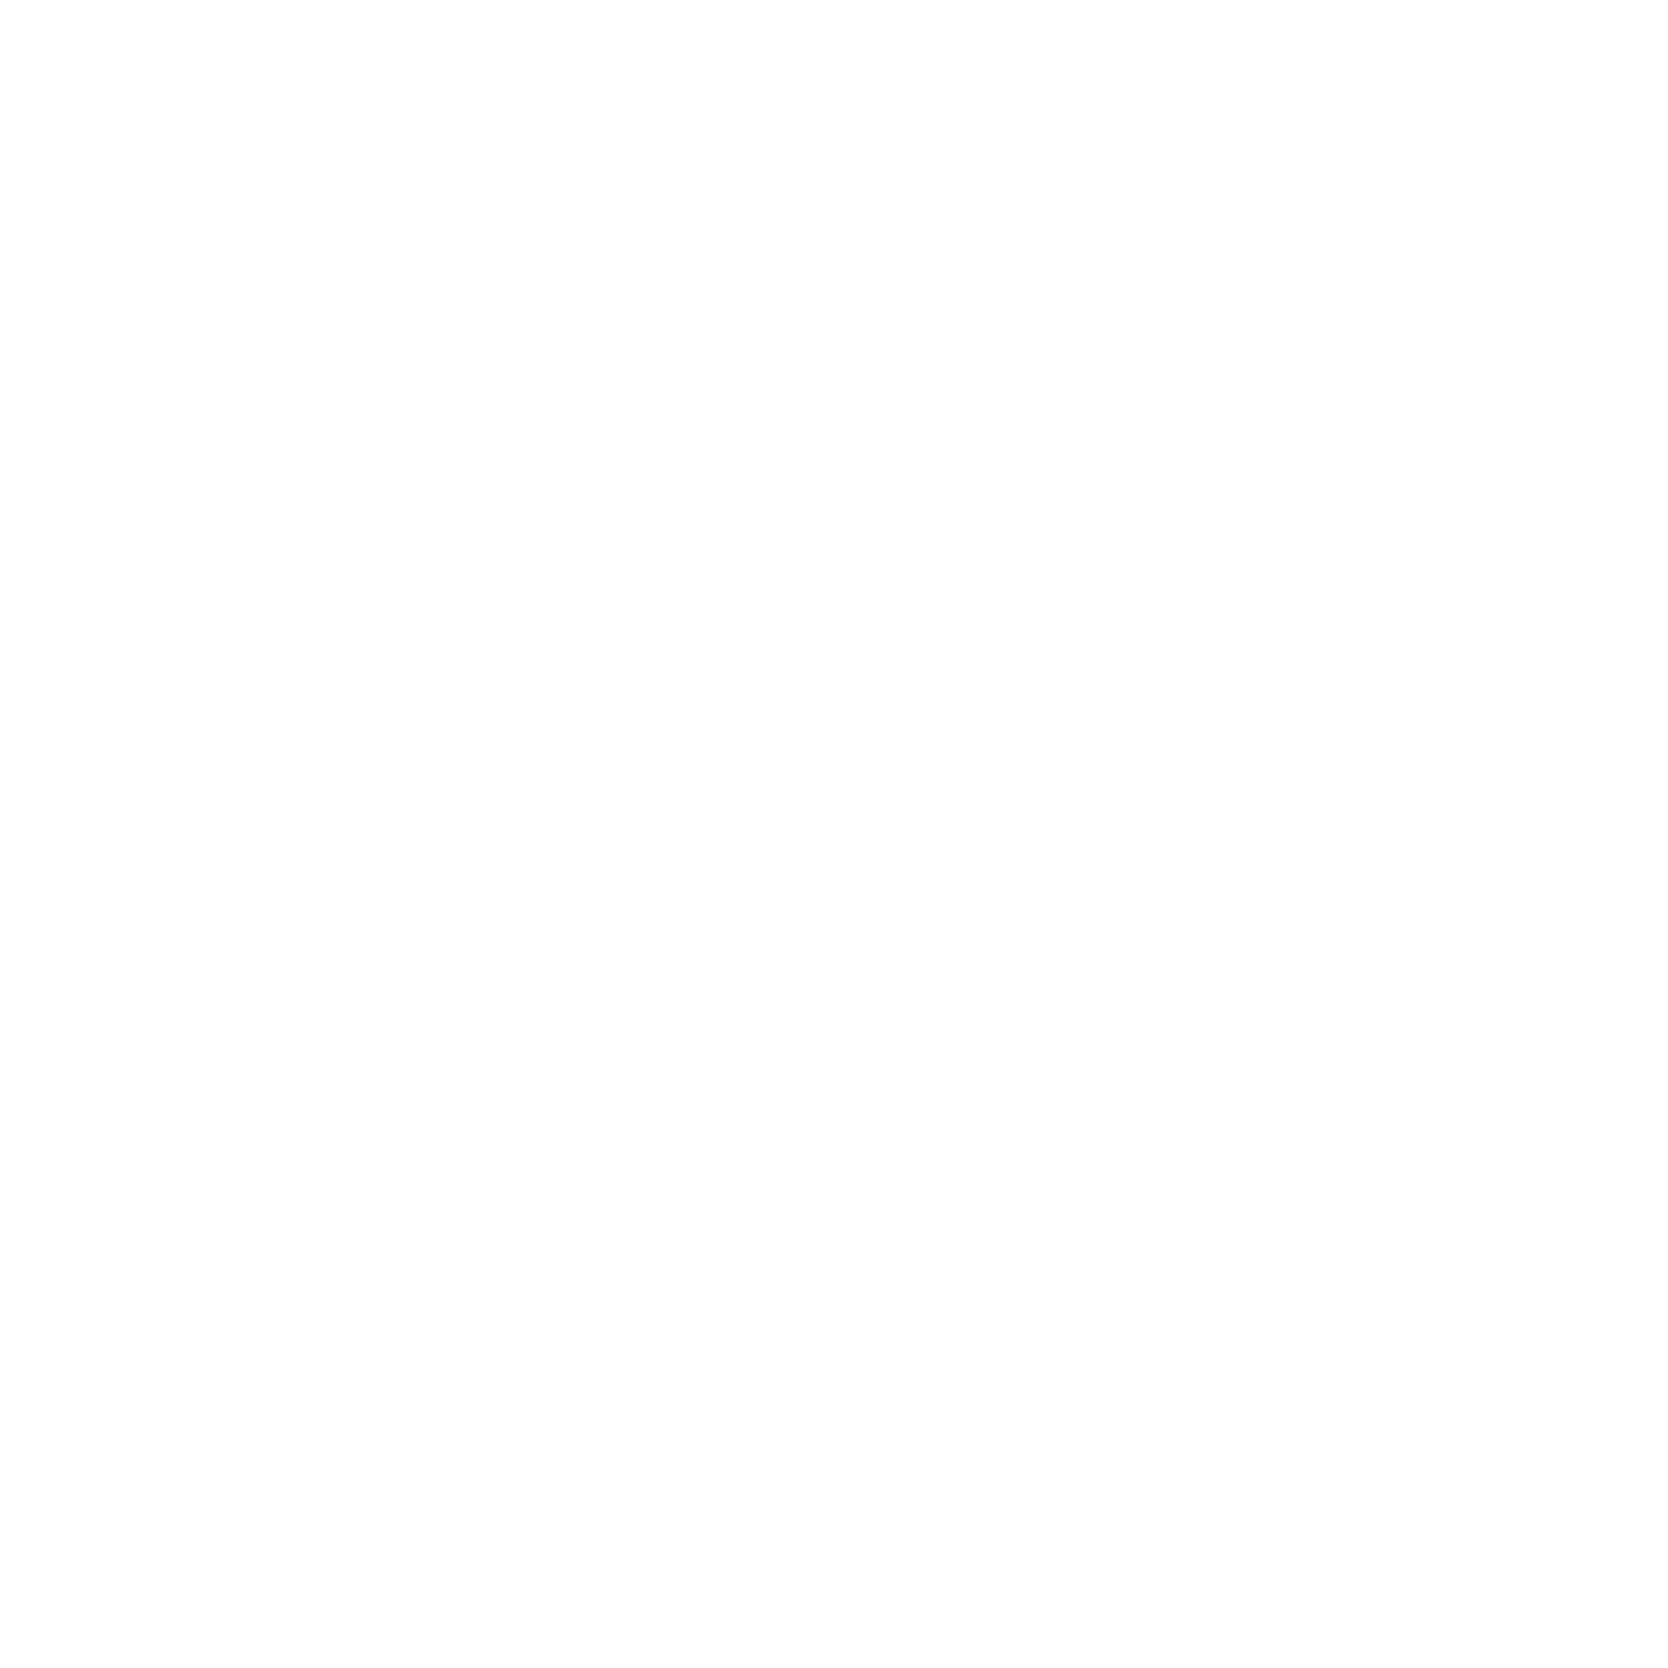 MASS FX